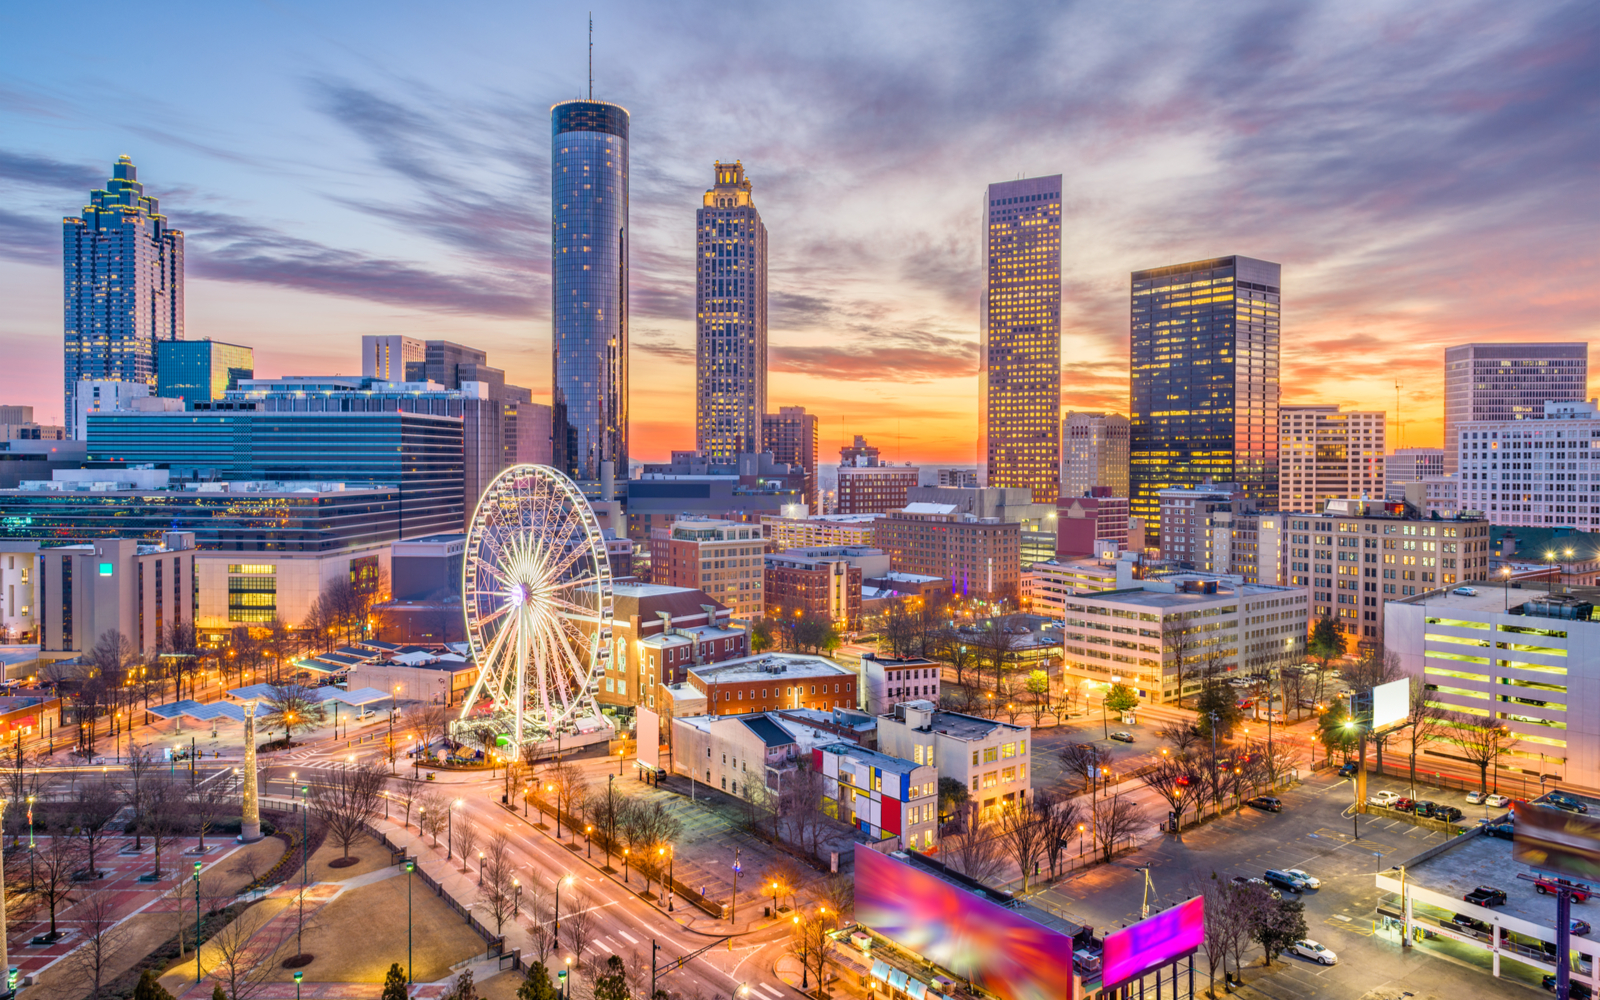 15 Best Hotels in Atlanta in 2022